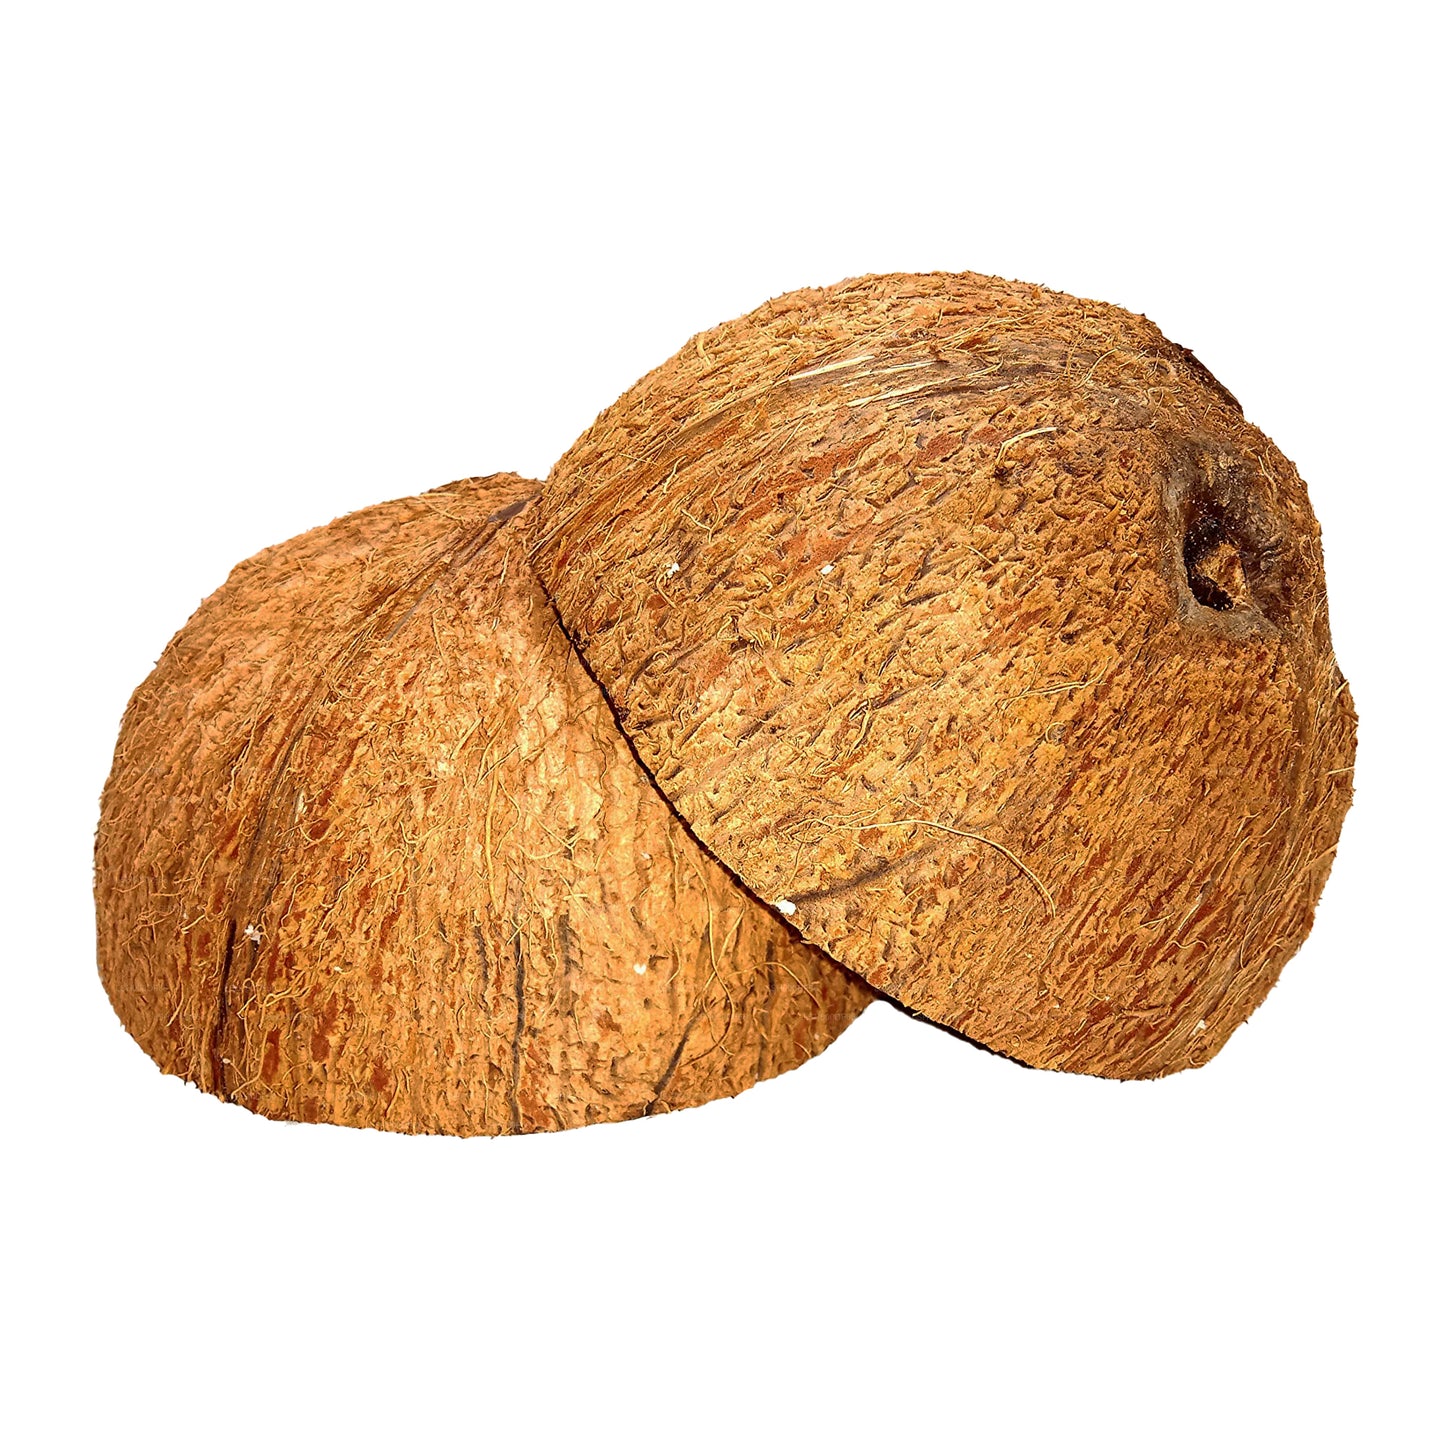 Половинки скорлупы кокосового ореха (2 шт.)